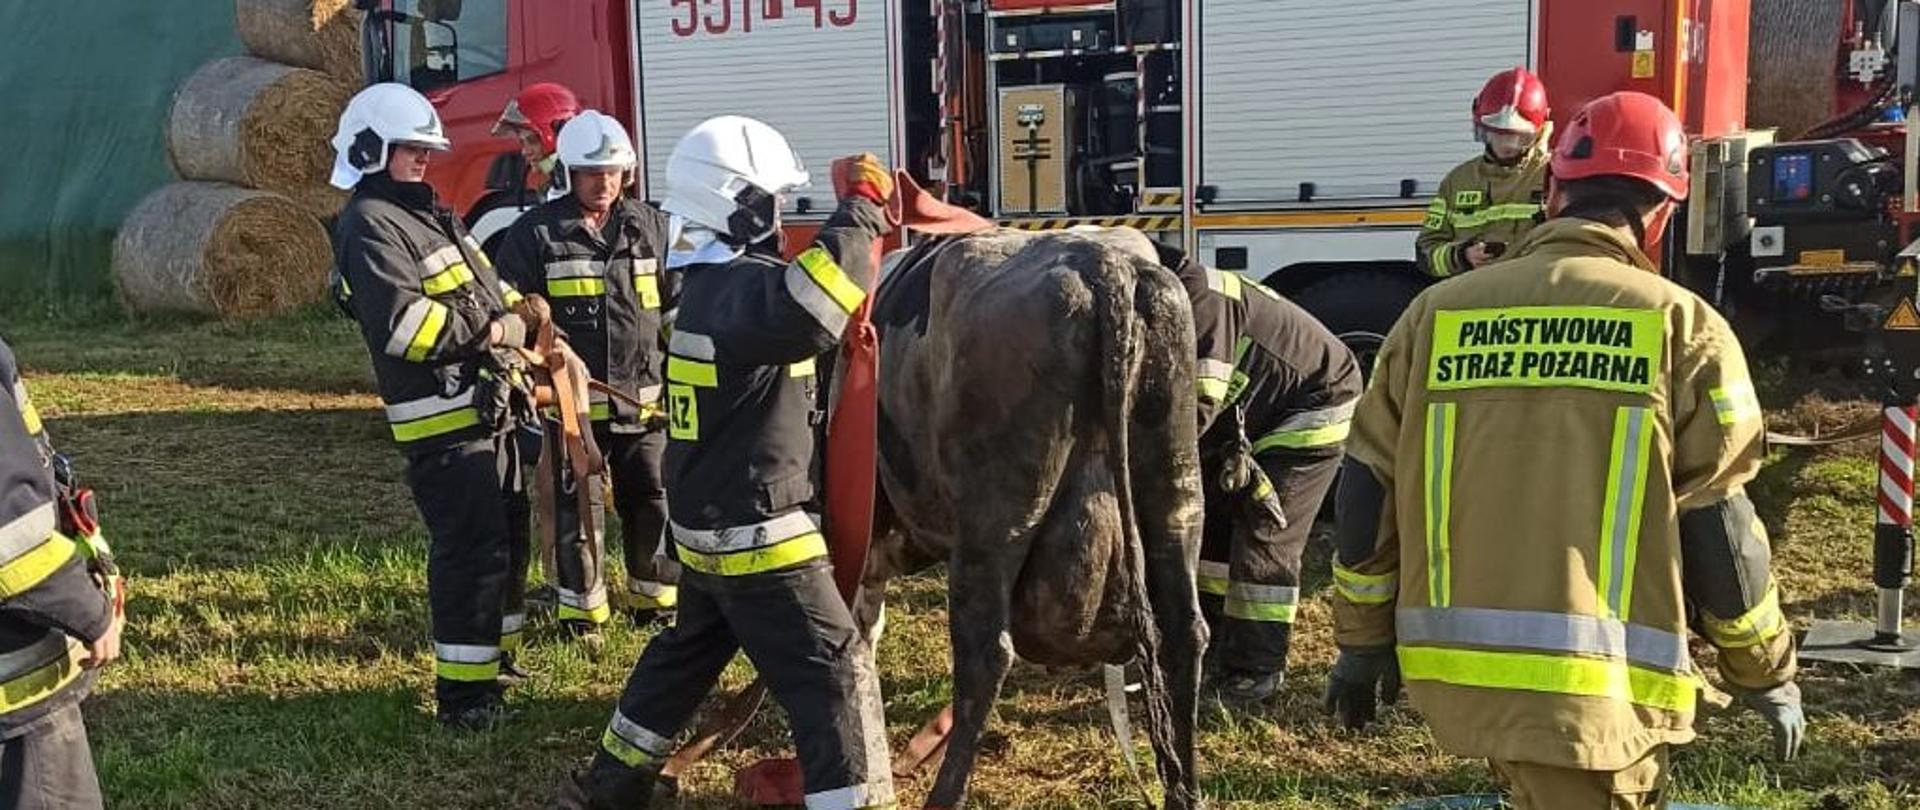 Zdjęcie przedstawia strażaków w trakcie akcji ratowniczej krowy, która wpadła do szamba. Jest słonecznie, dzień, bez opadów. 